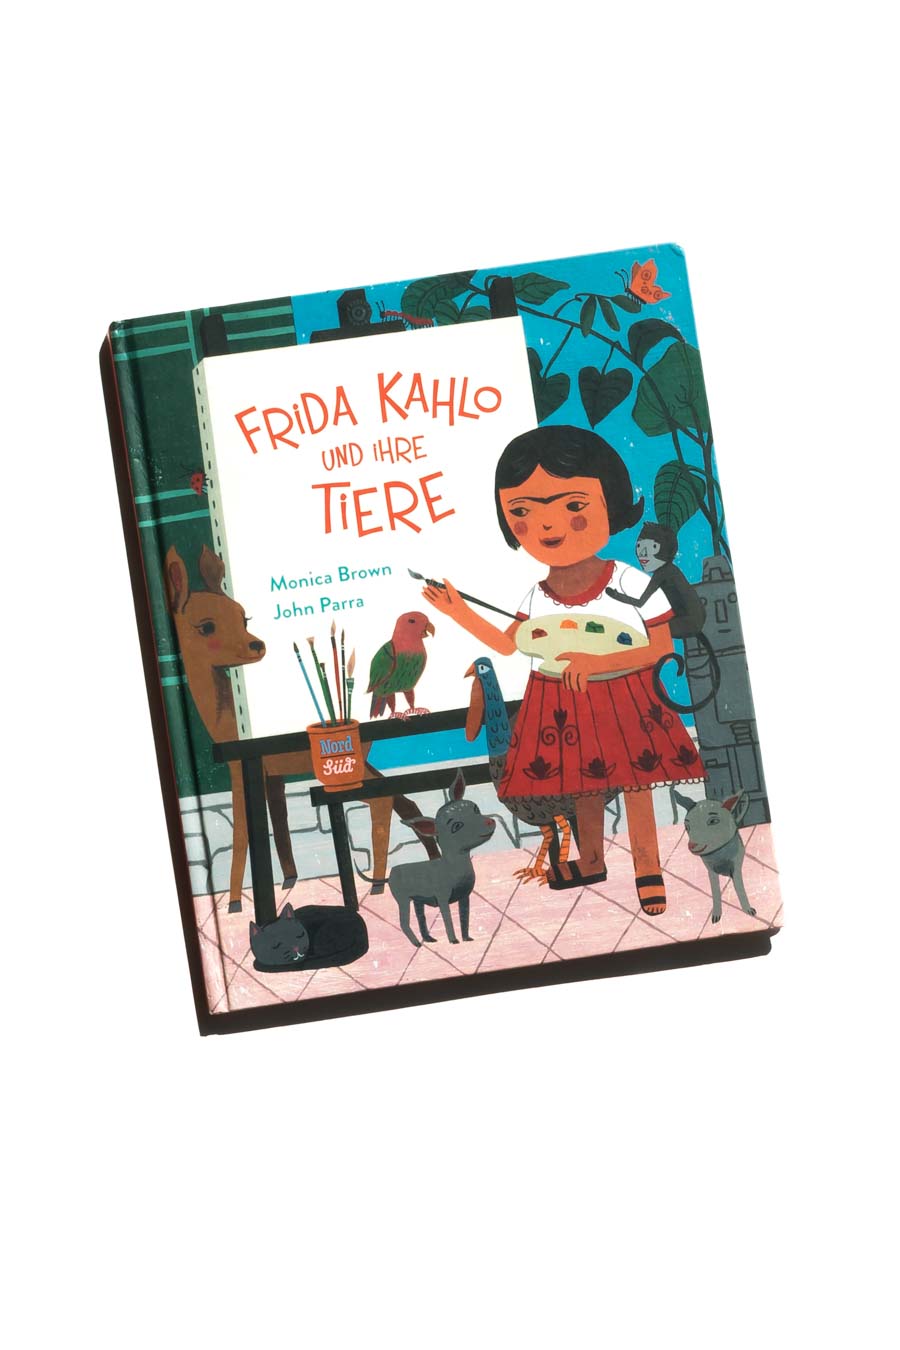 Frida Kahlo und ihre Tiere von Monica Brown. Bücher über starke Mädchen. Bilderbücher ohne Sexismus und Genderismus. Kinderbücher mit Feminismus und Gleichstellung. Blick ins Buch auf: www.chezmamapoule.com